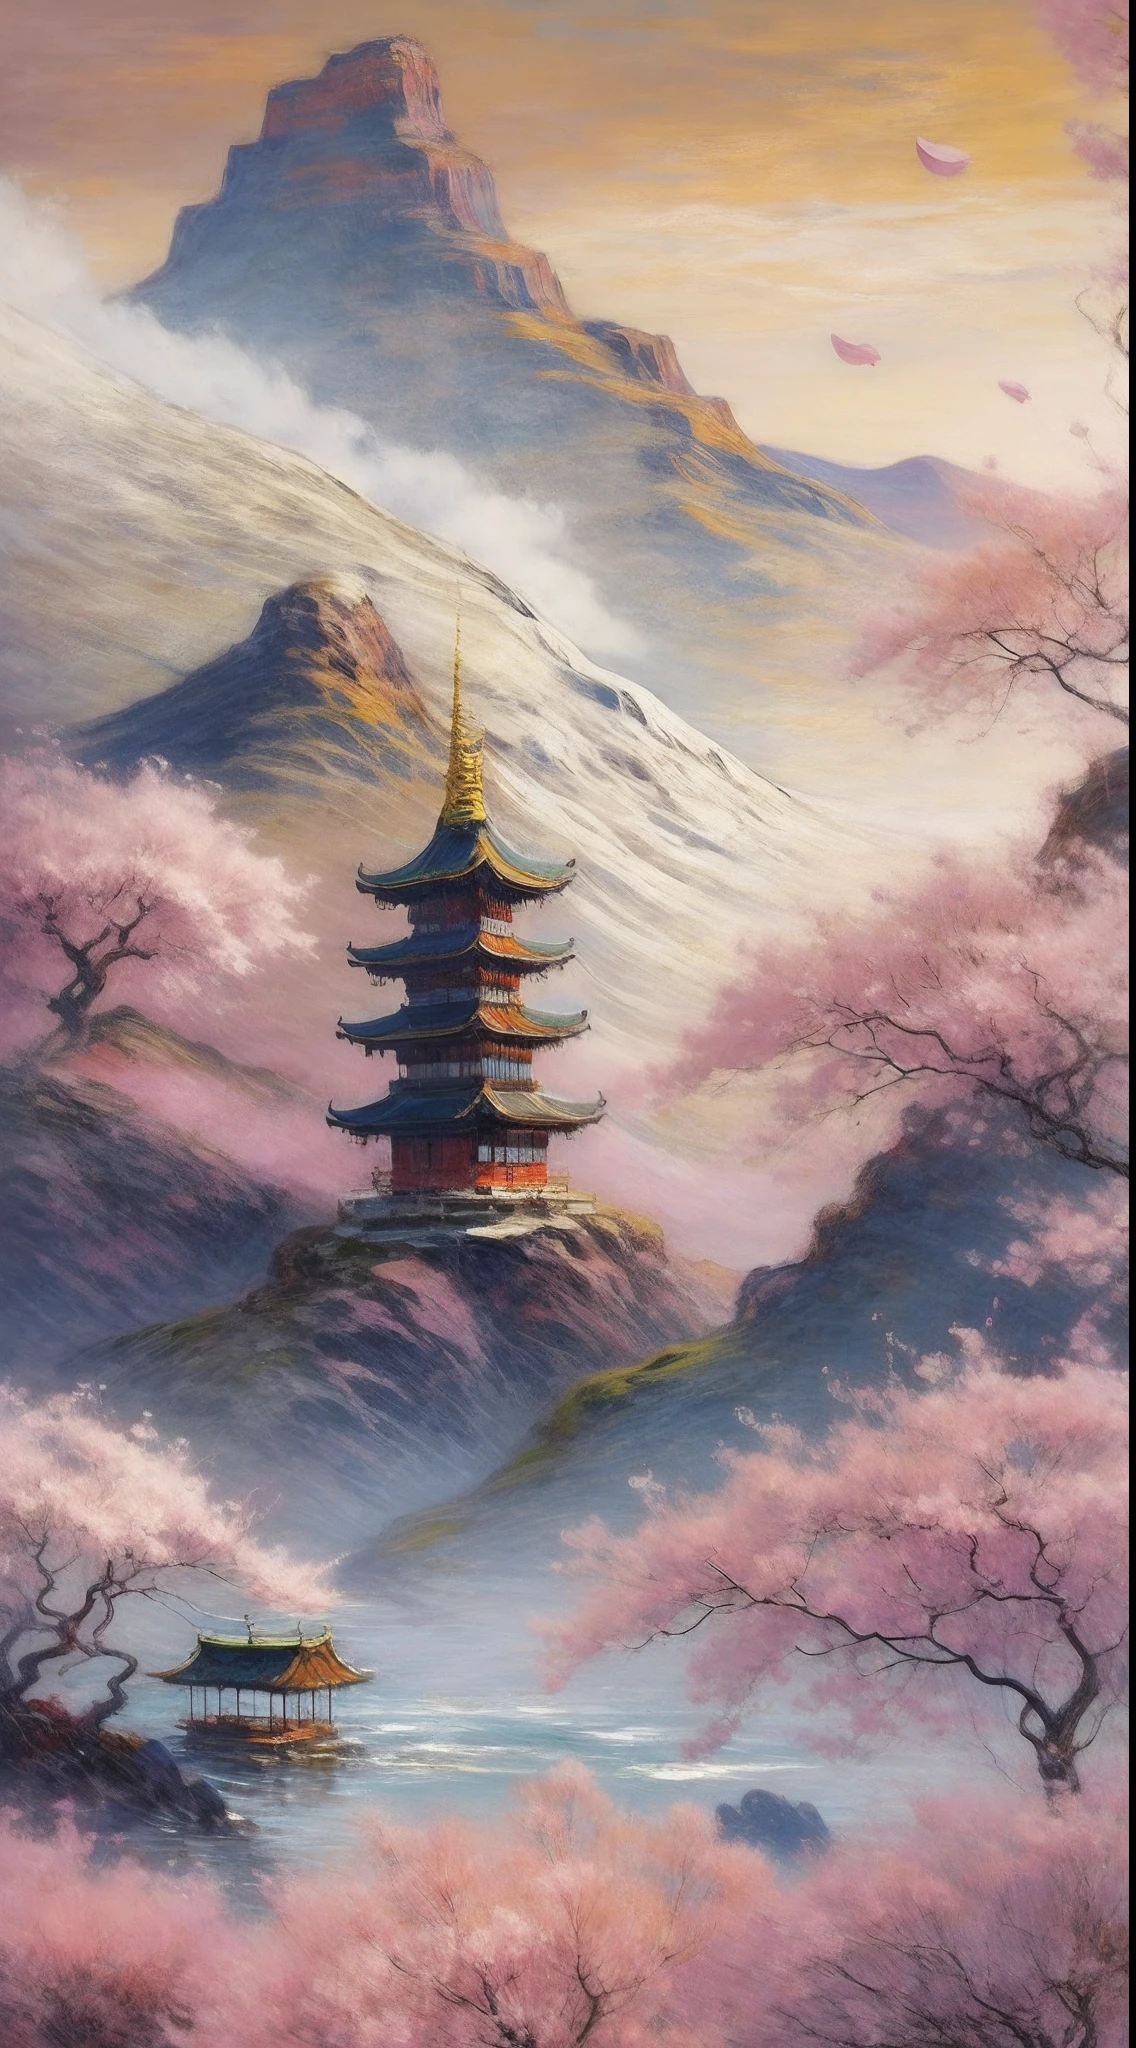 Eine ruhige Berglandschaft bei Sonnenaufgang, mit einem einsamen Tempel auf einem Gipfel, umgeben von Kirschblütenbäumen in voller Blüte, ein Gefühl der Ruhe und des spirituellen Erwachens hervorrufen, Illustration, digital art